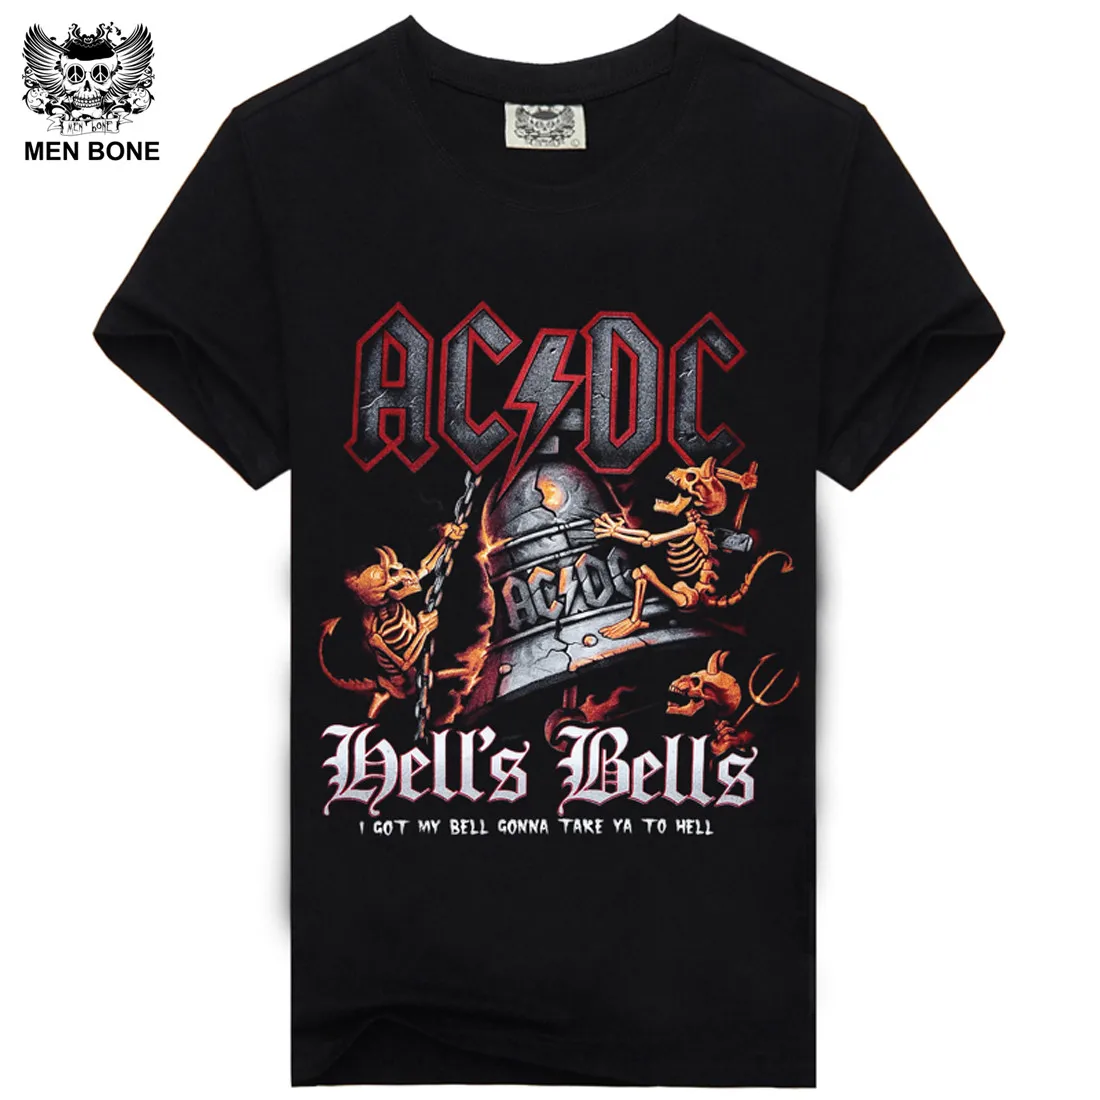 [Muži kost] hip-hop rockové tričko těžký kov AC DC bavlna kulatý límec velikost od S do XXXl tisk Černé tričko pánské tričko